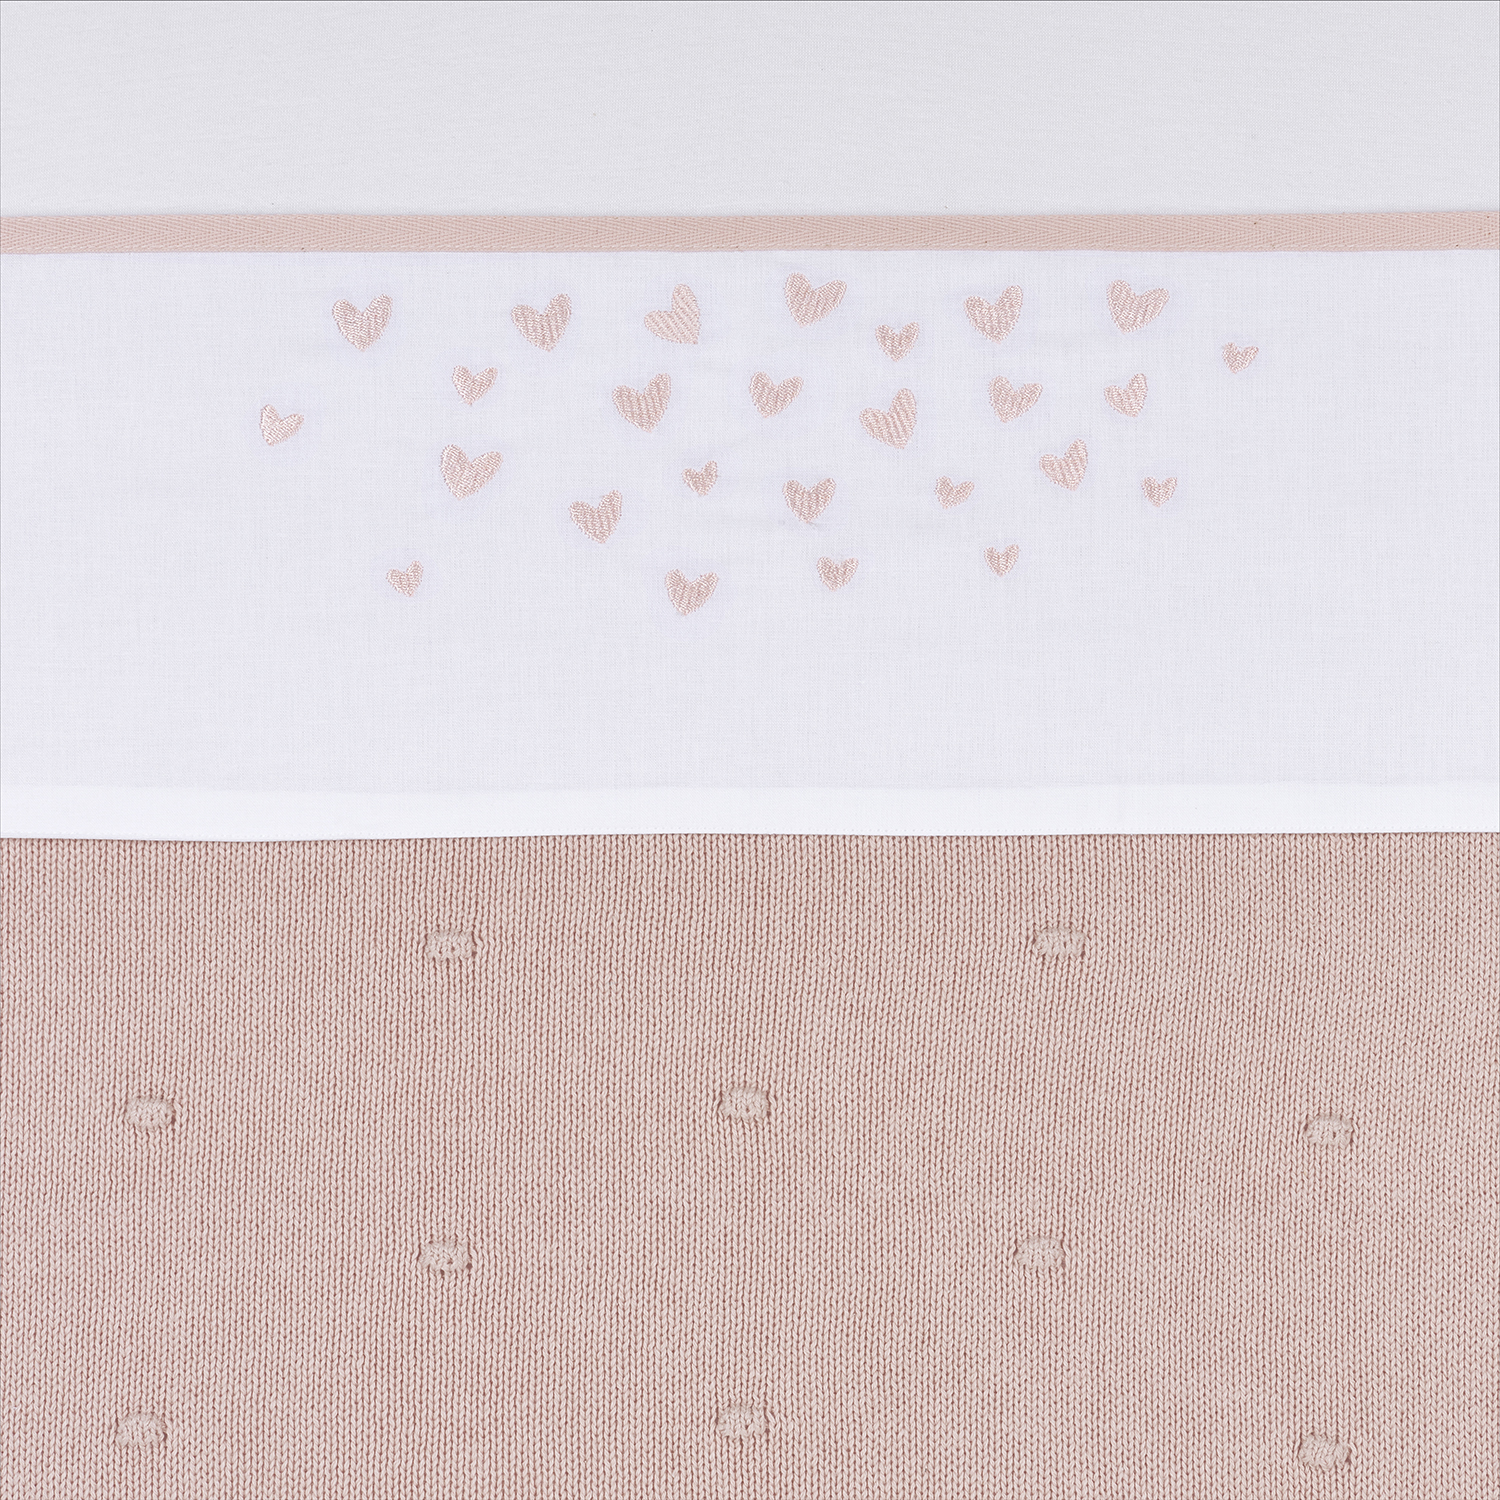 Wieglaken Hearts - soft pink - 75x100cm